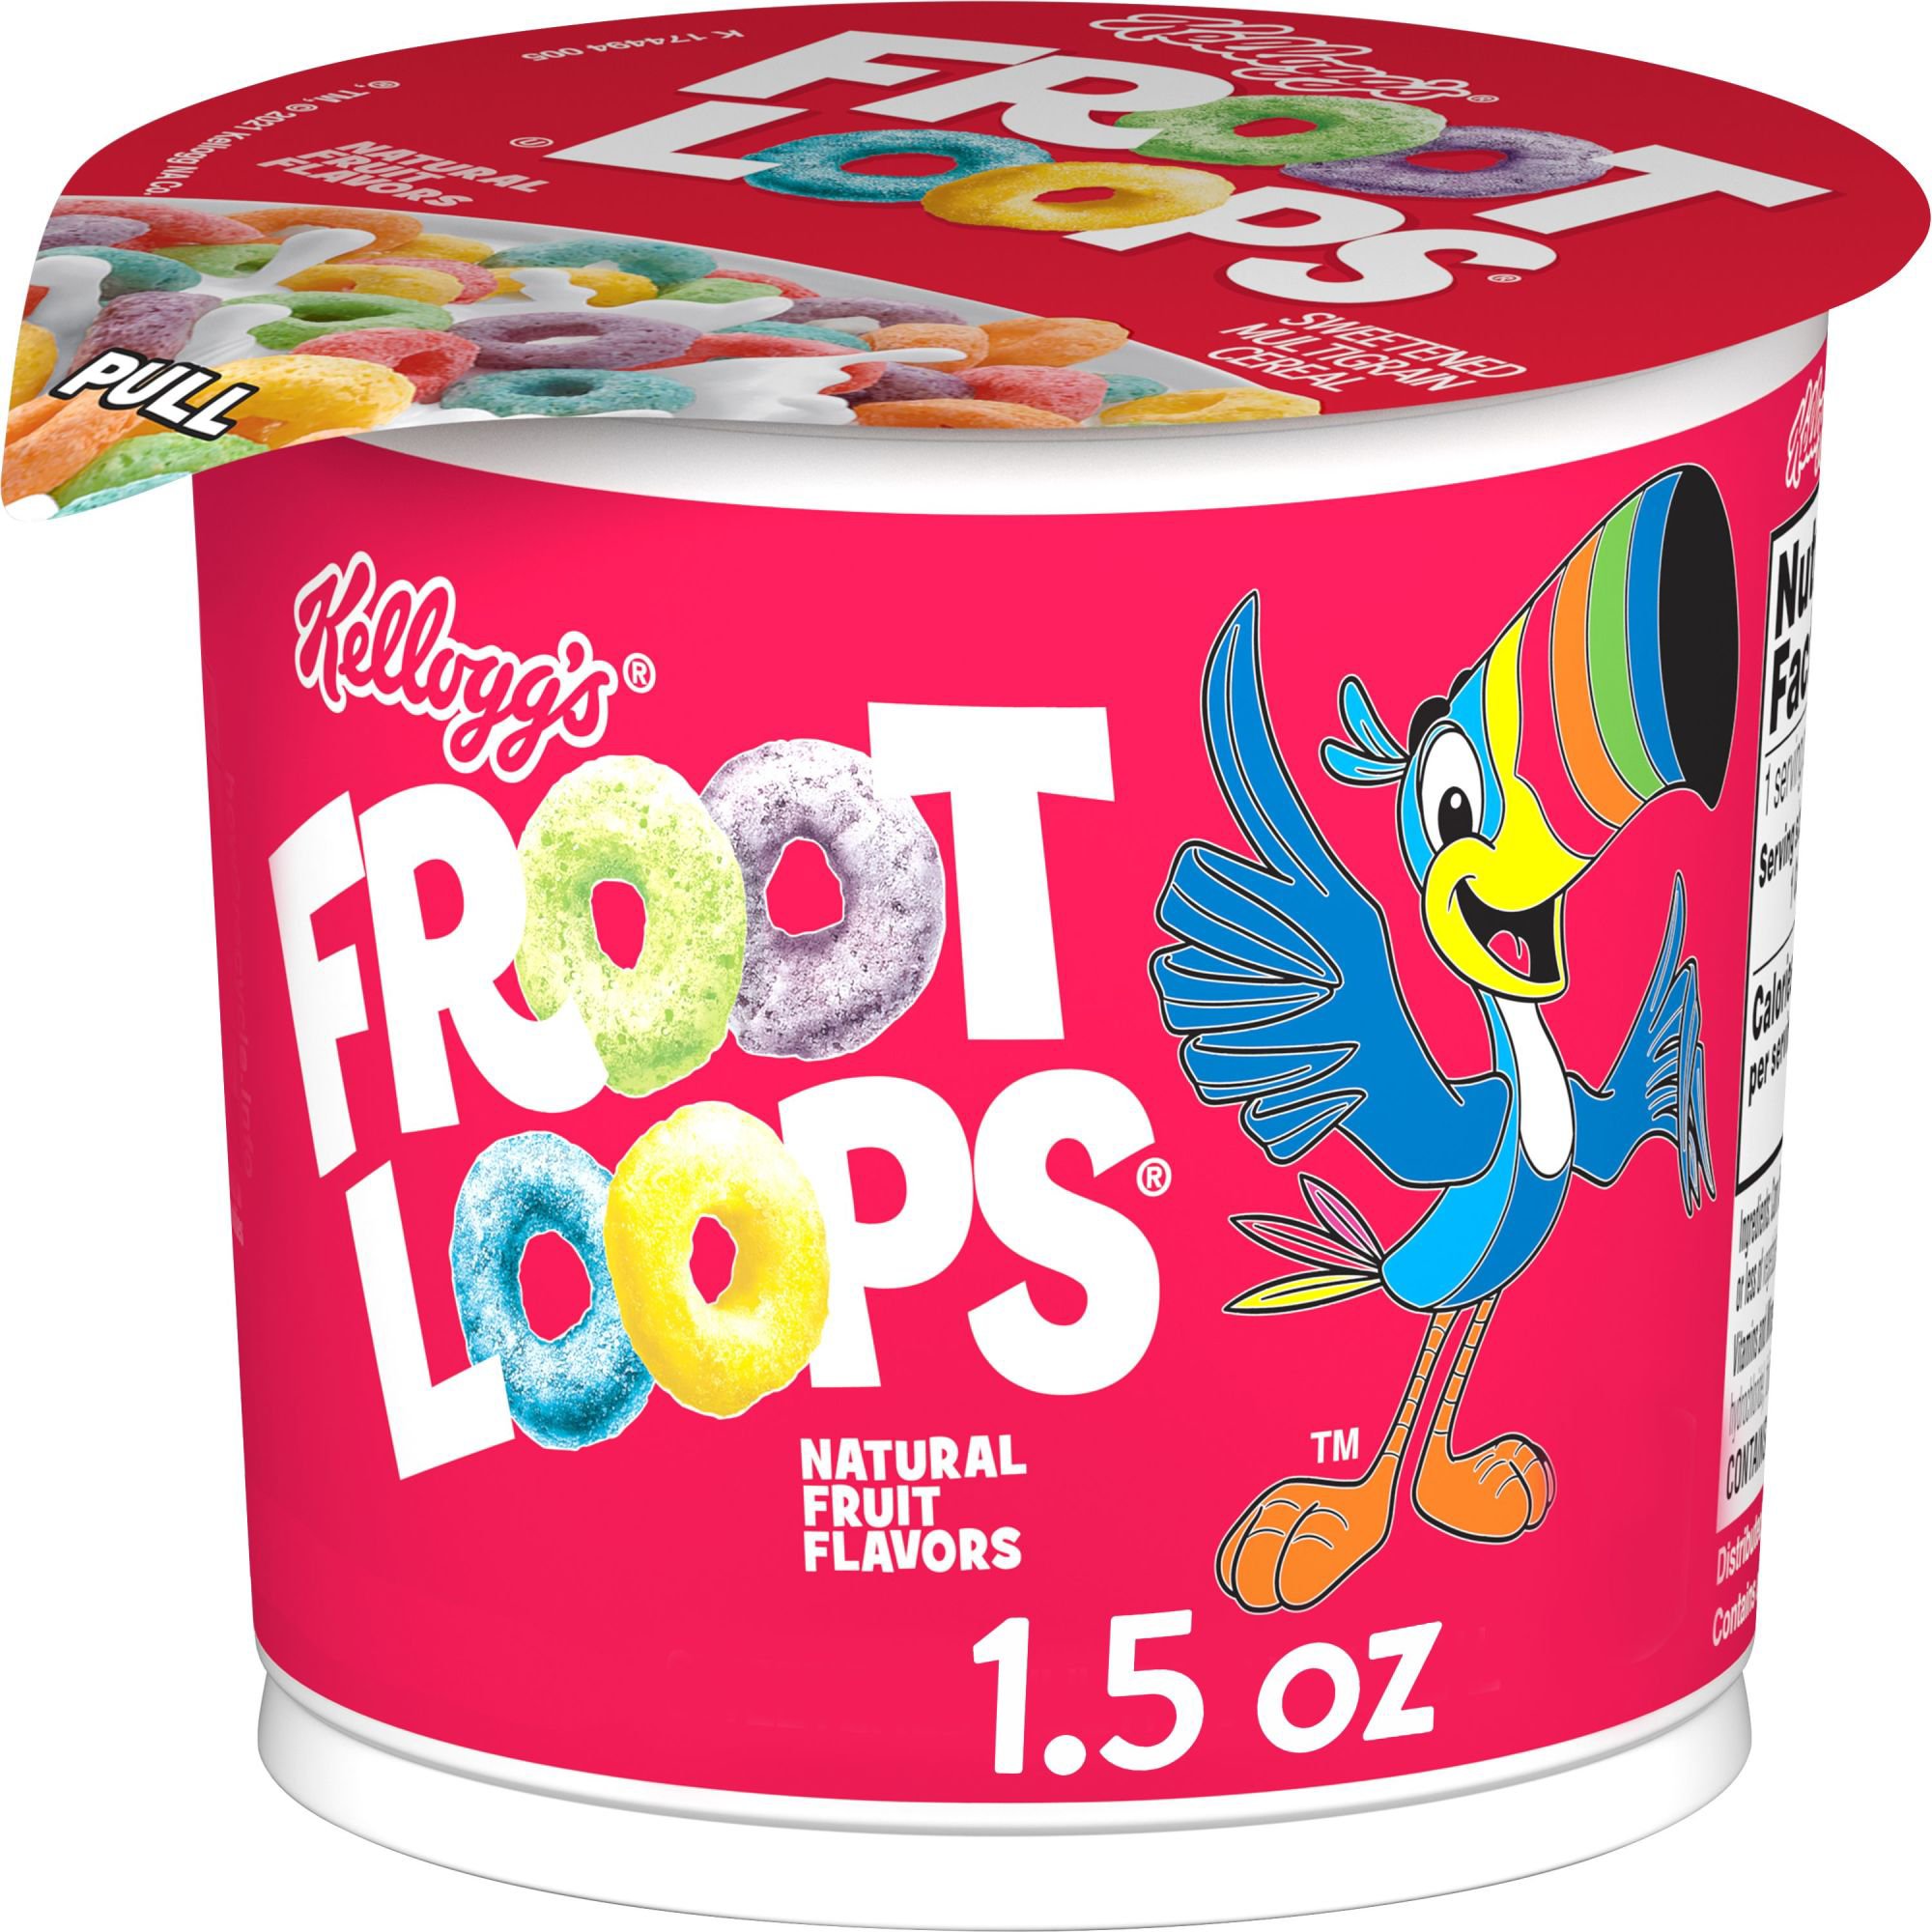 Eggo Froot Loops Frozen Waffles, 12.3 oz, 10 Count - Price Rite